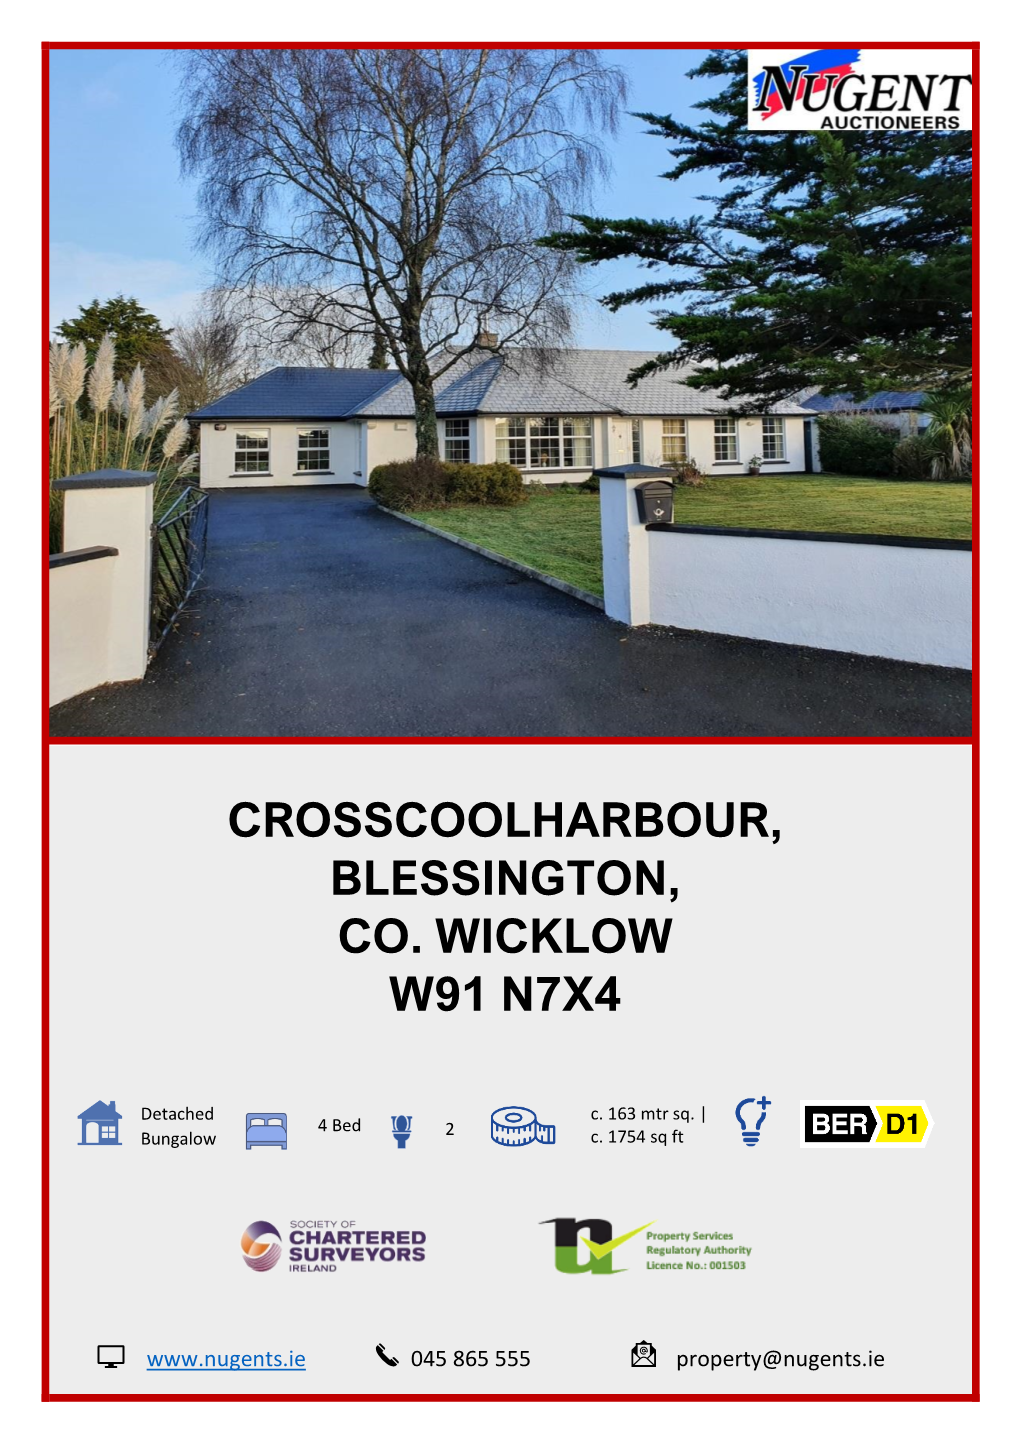 Crosscoolharbour, Blessington, Co. Wicklow